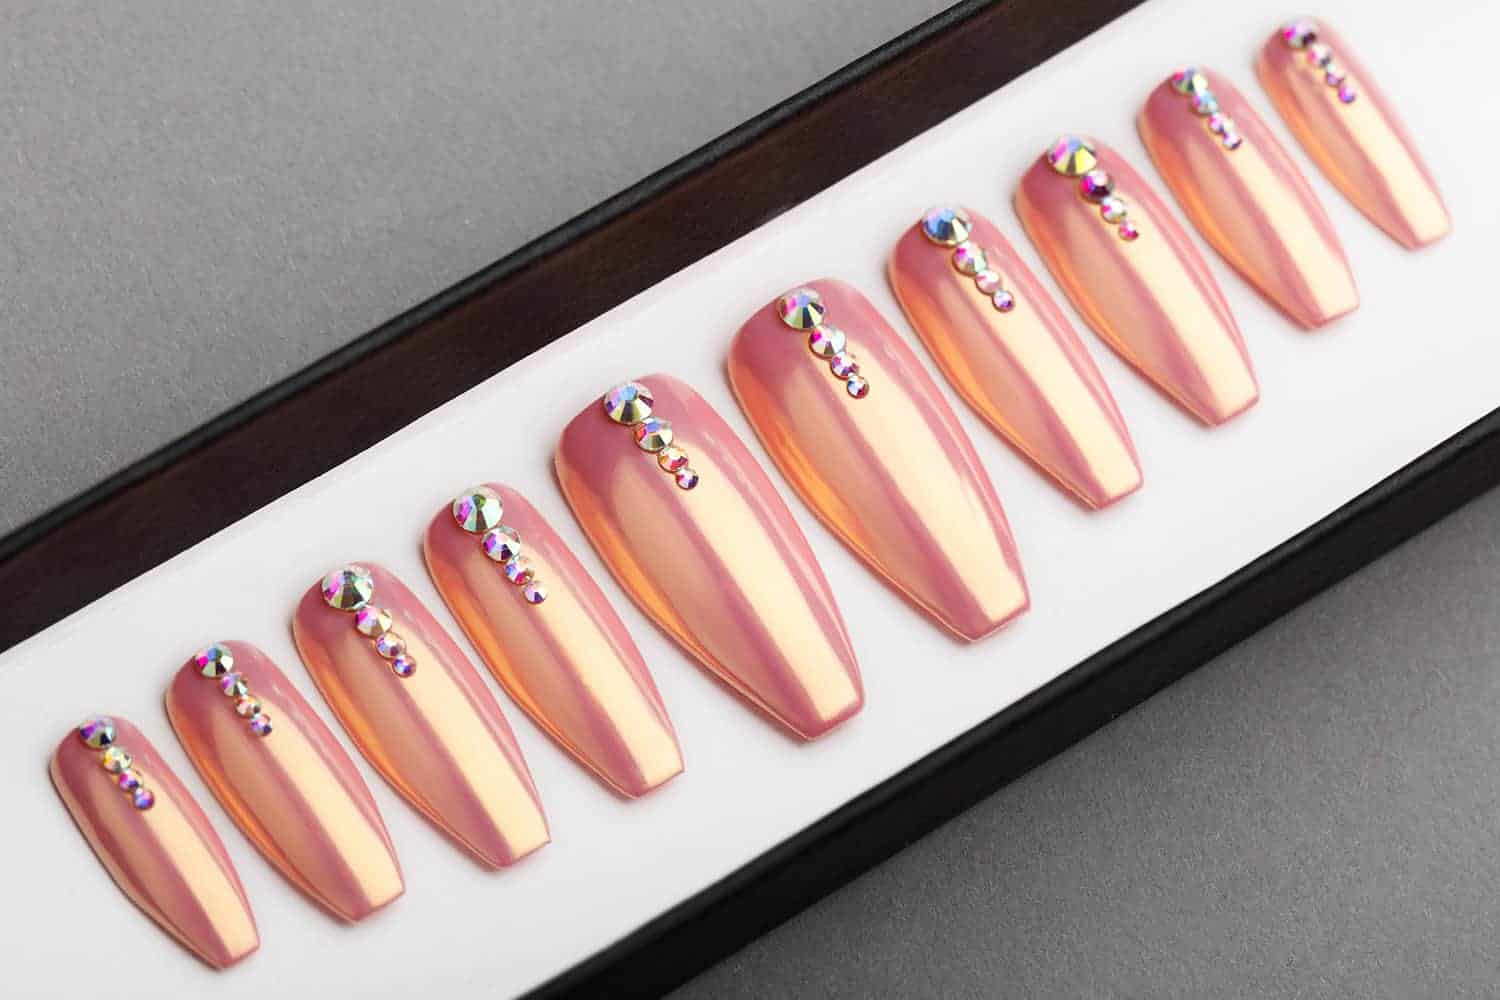 Nude Chrome Press on Nails with Swarovski crystals | Hand painted nail art | Fake Nails | False Nails | Bling Nails